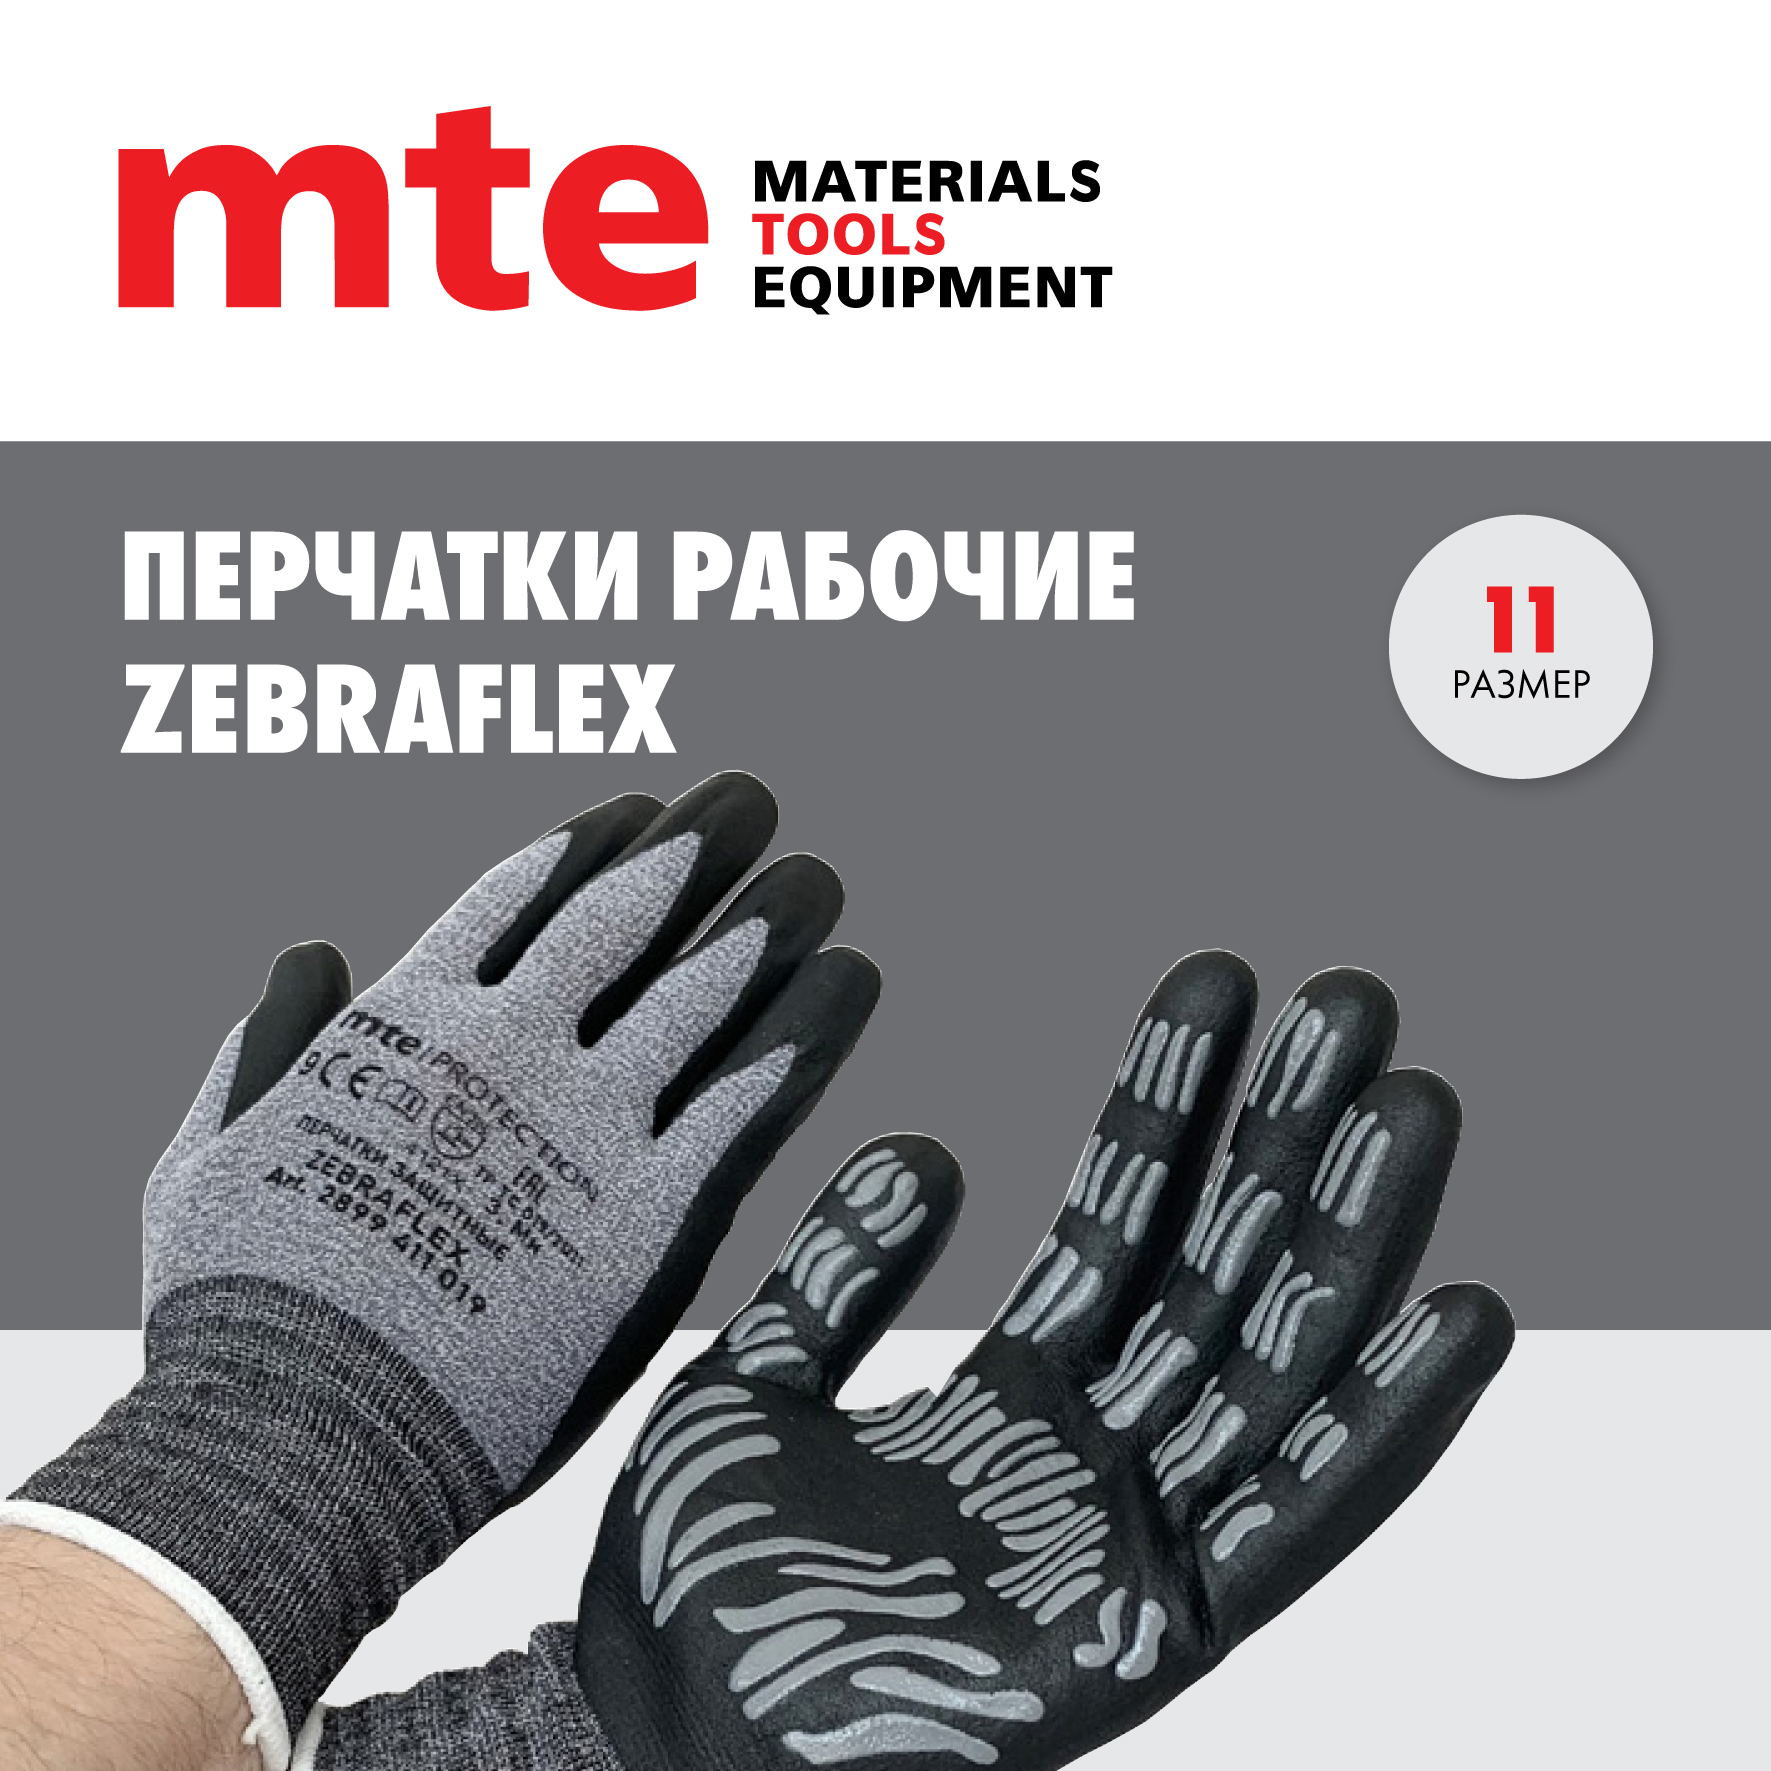 Универсальные защитные перчатки mte ZEBRAFLEX Р.11 защитные улучшенные перчатки s gloves